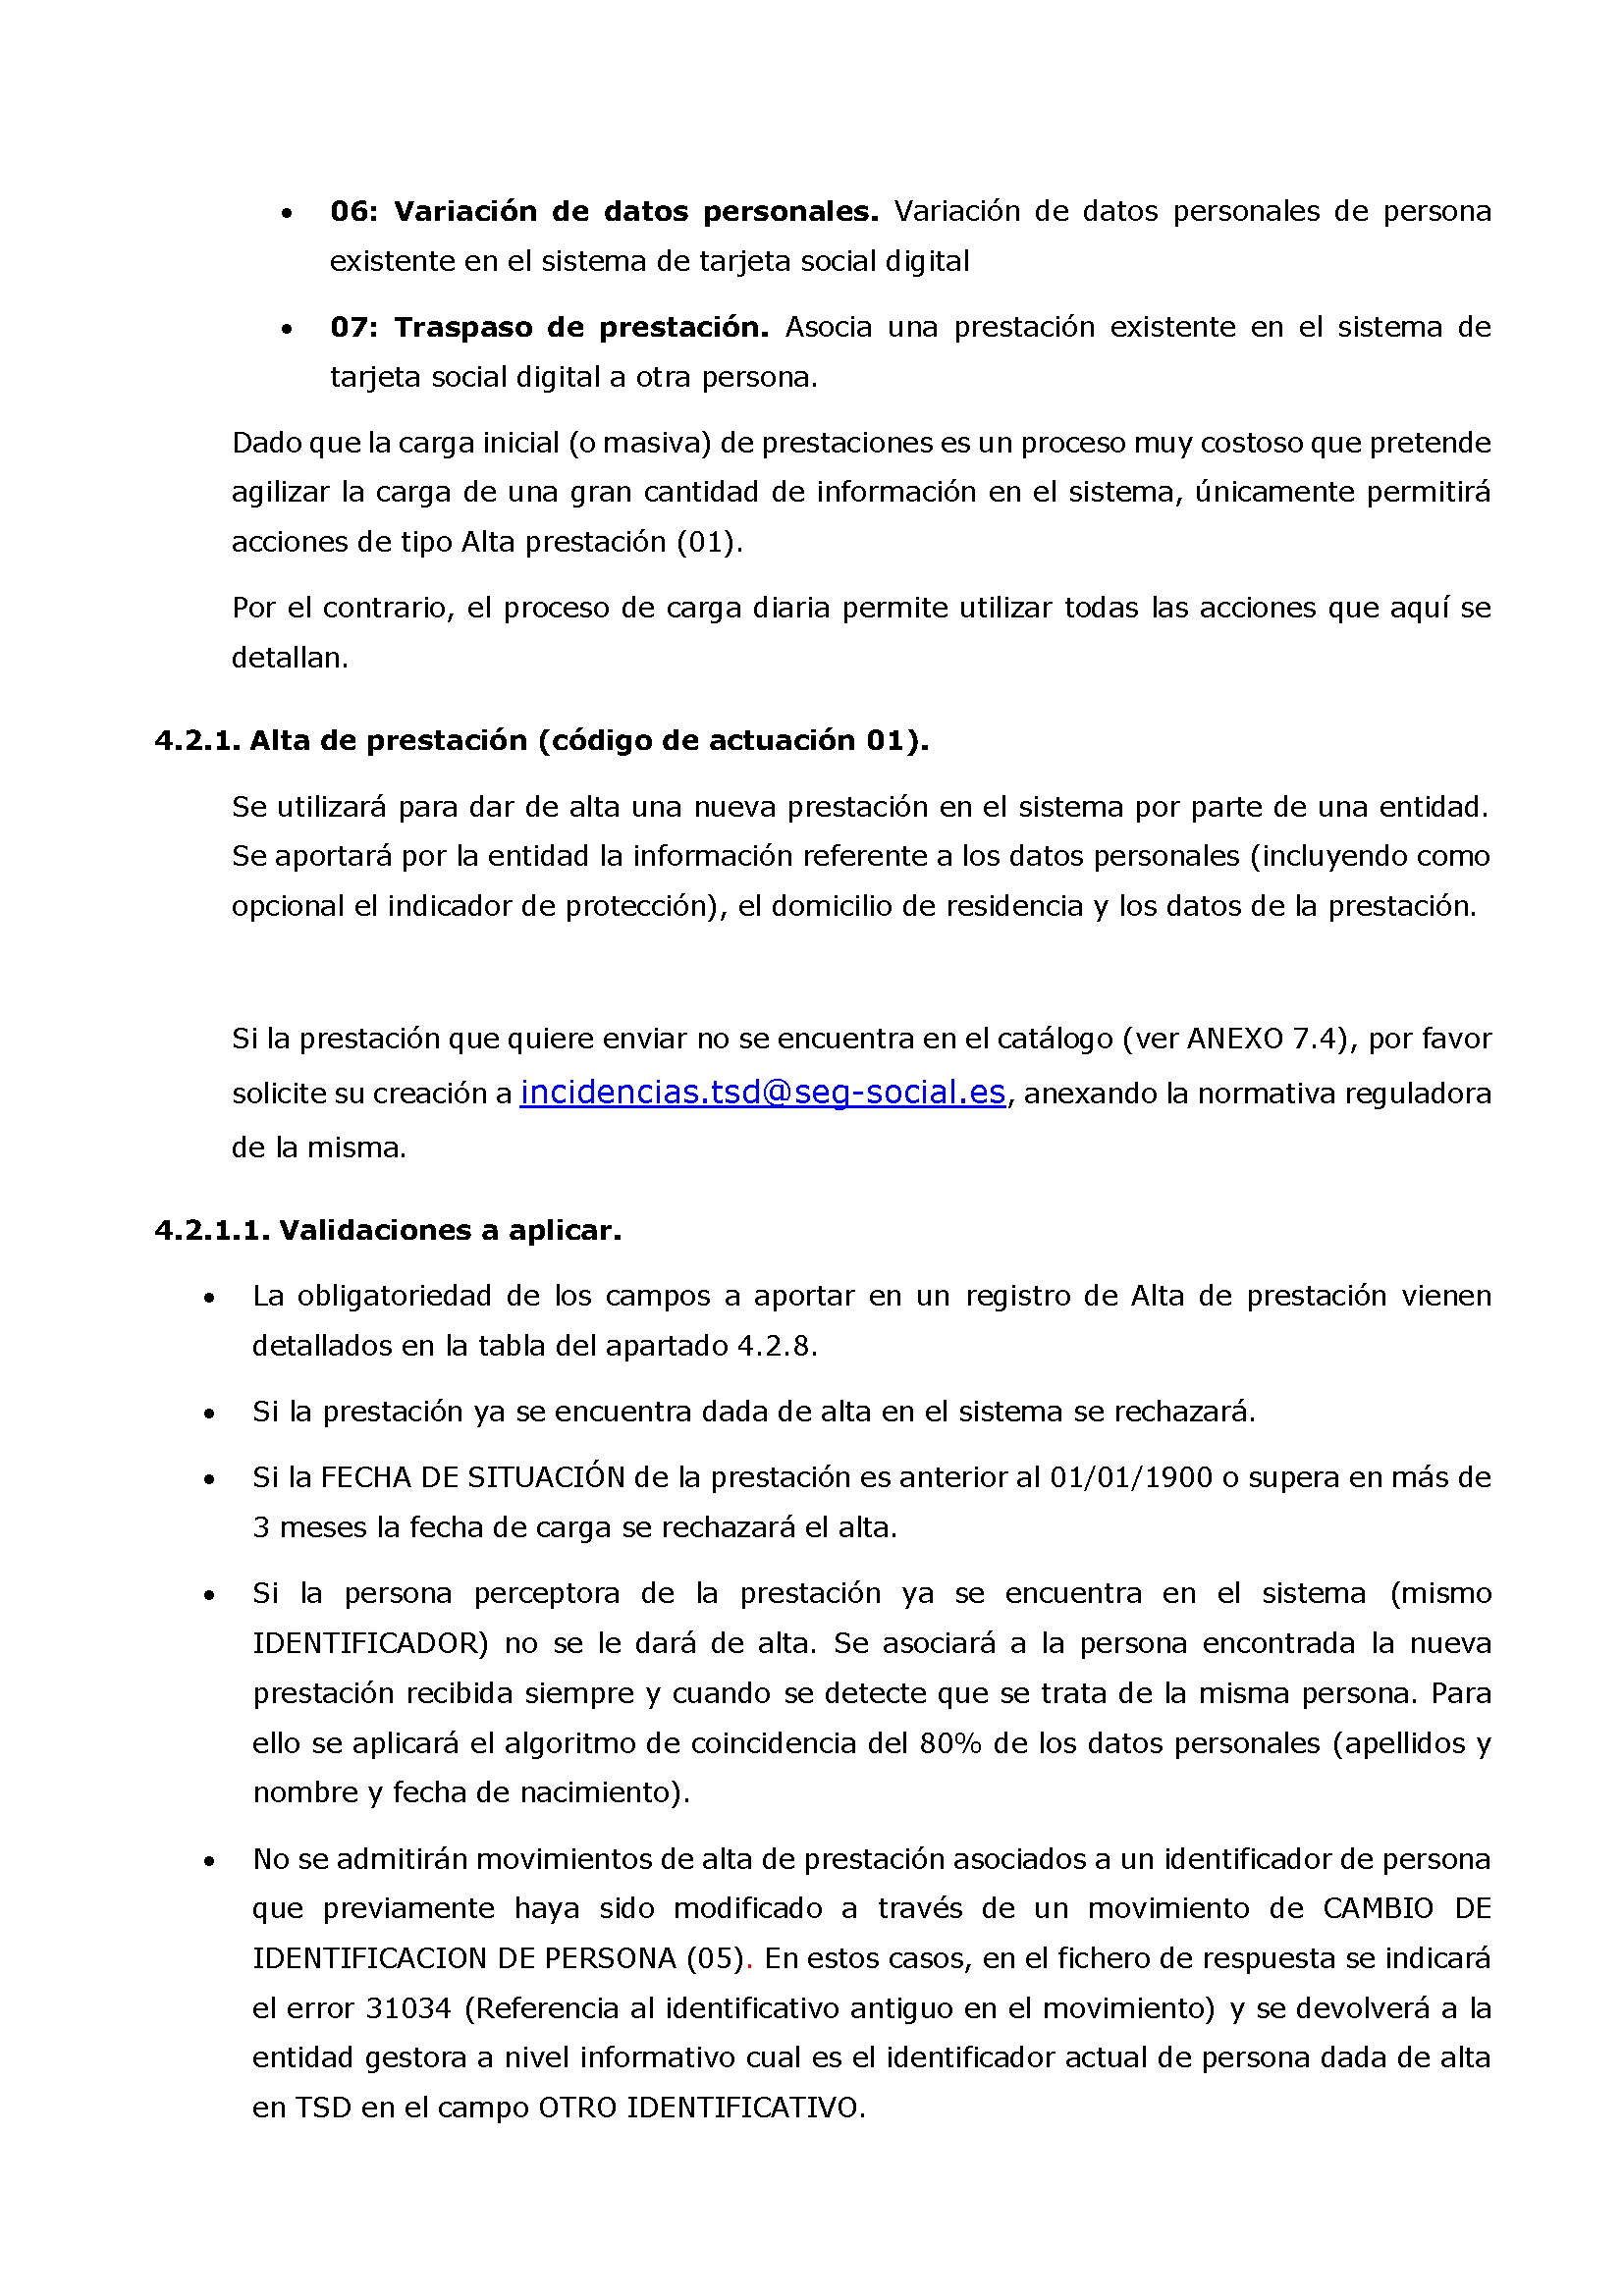 ANEXOS PROTOCOLO DE INTERCAMBIO DE FICHEROS PARA LA CARGA DE DATOS EN TARJETA SOCIAL DIGITAL Pag 40